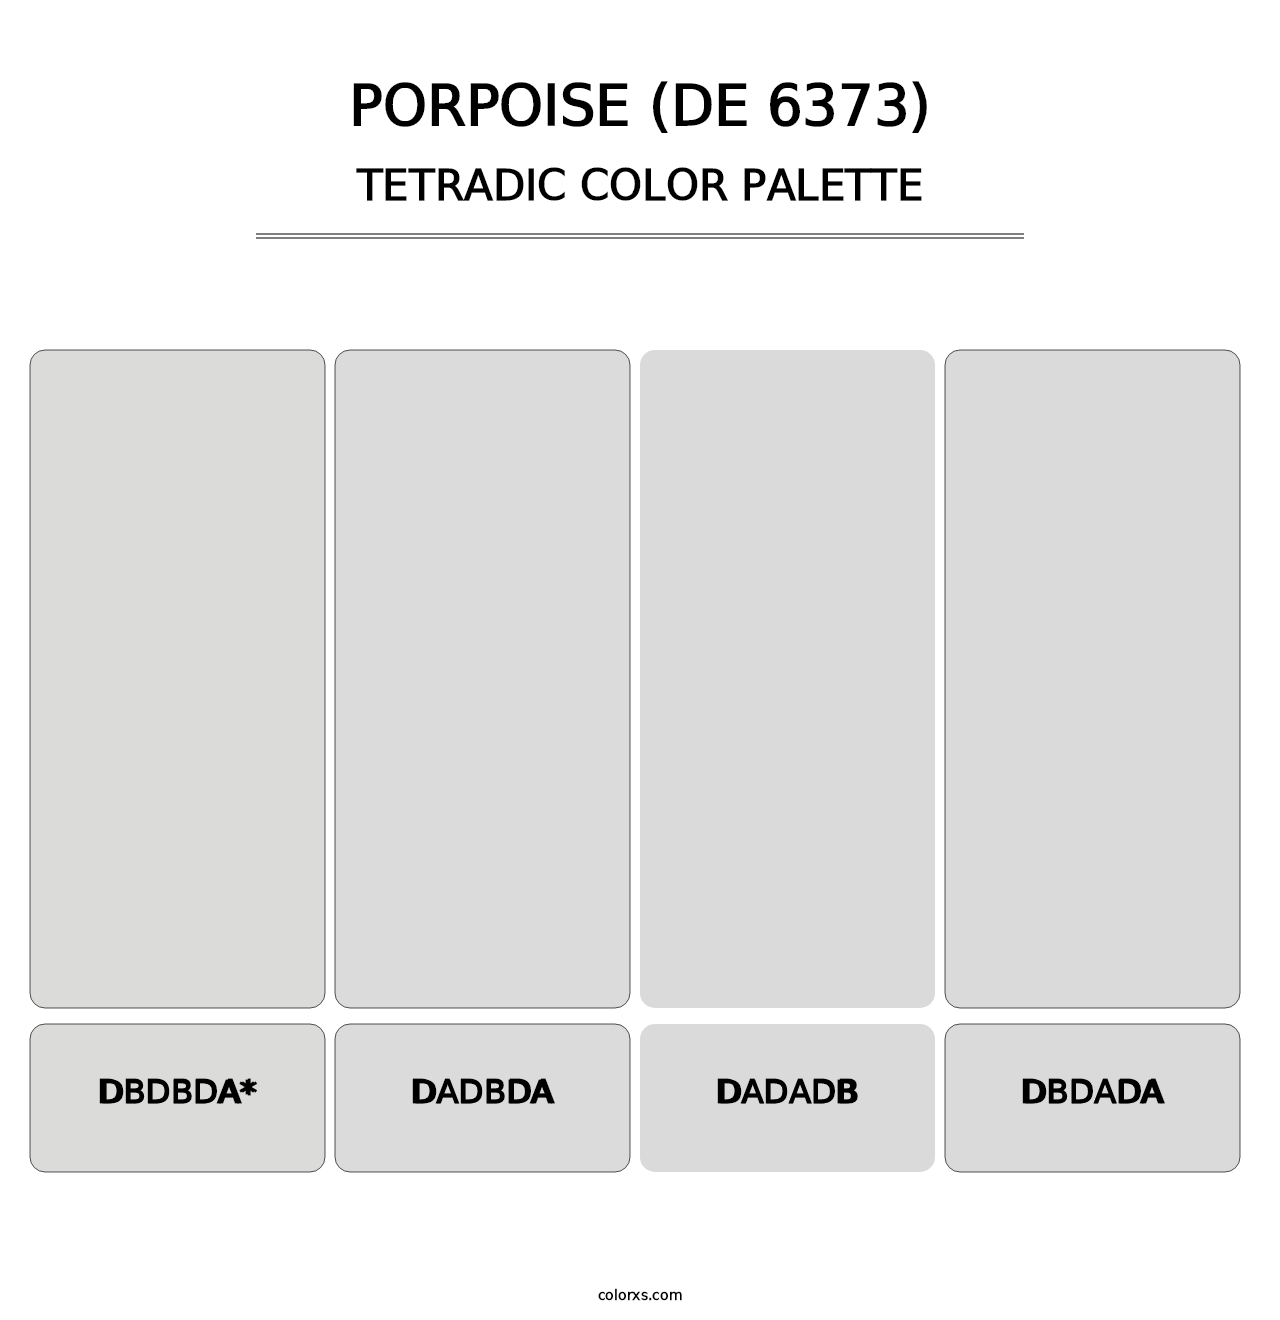 Porpoise (DE 6373) - Tetradic Color Palette